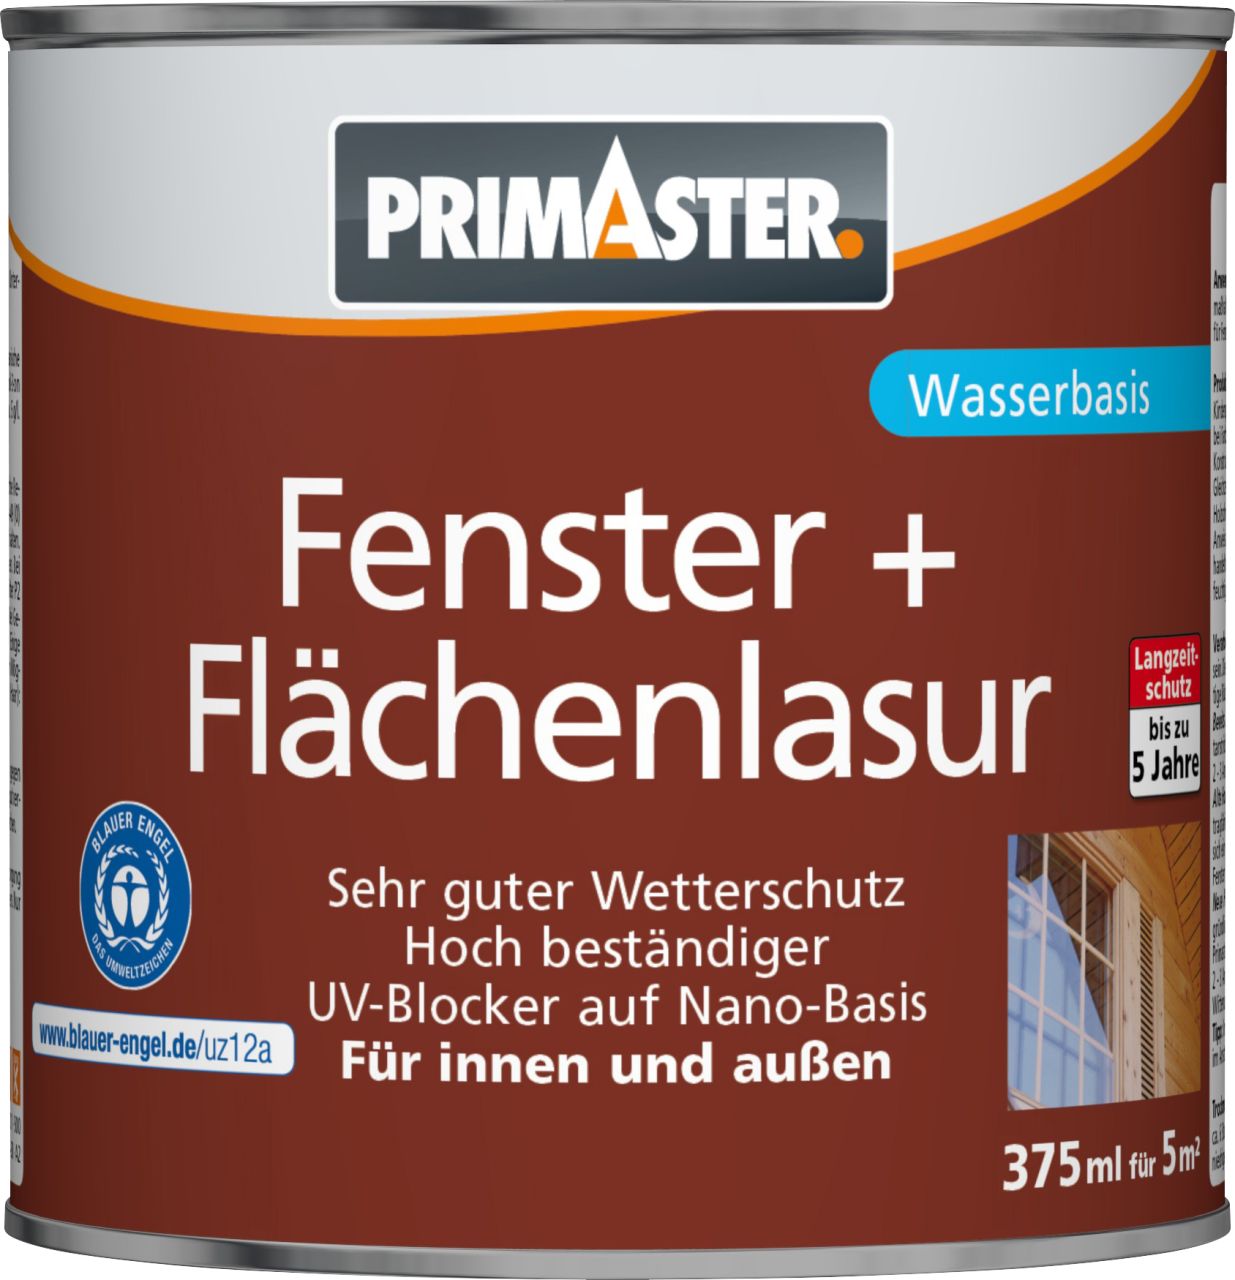 Primaster Fenster und Flächenlasur 375 ml farblos von Primaster